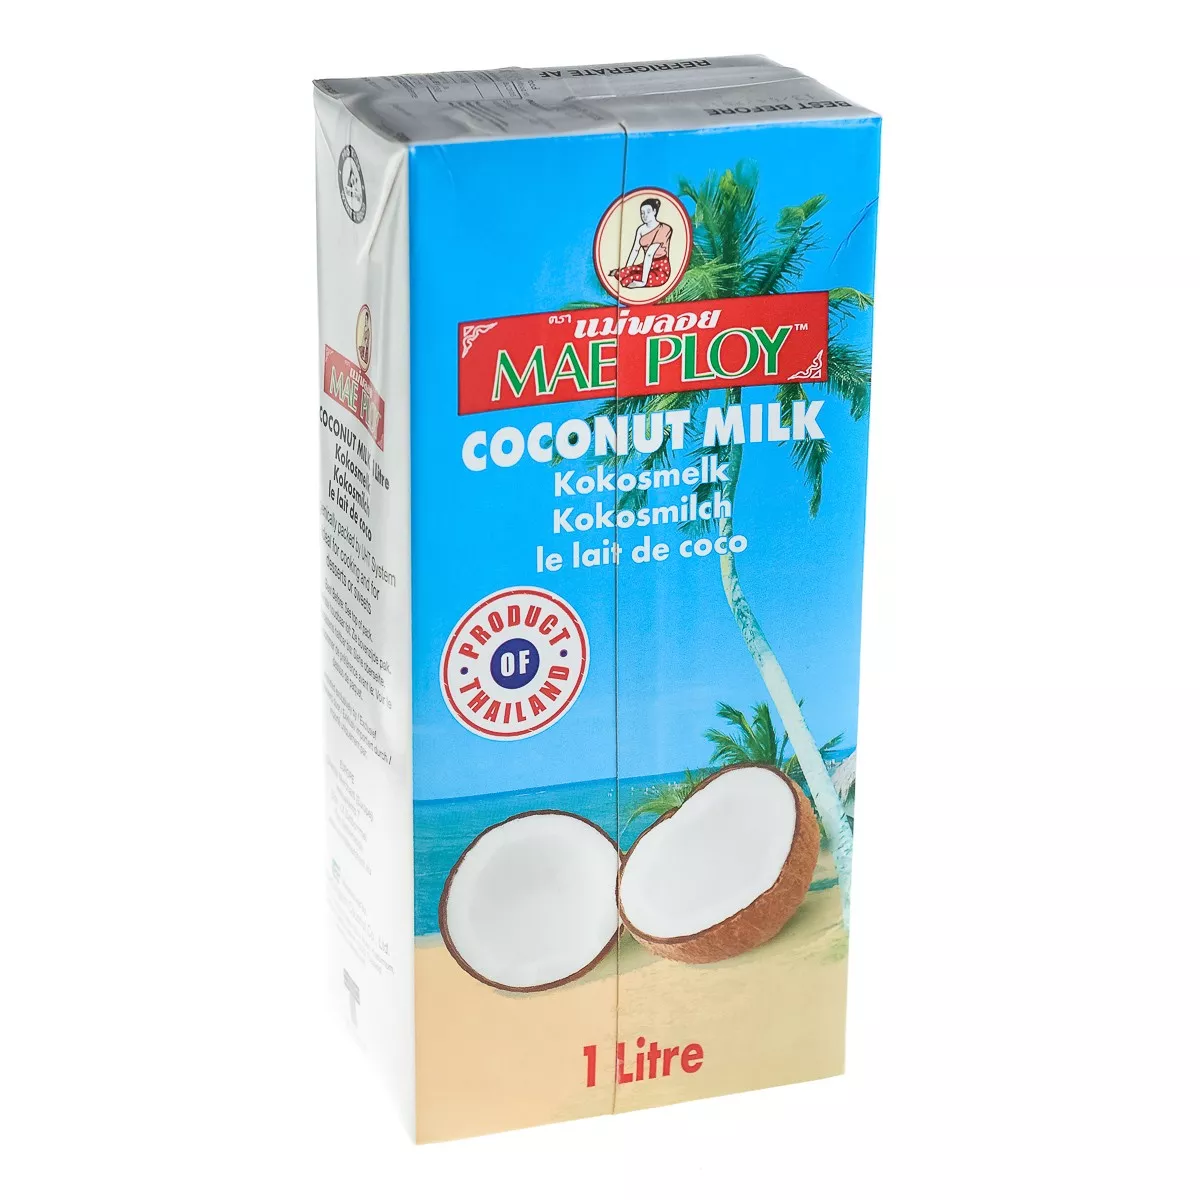 Lapte de cocos MAE PLOY 1L, [],asianfood.ro